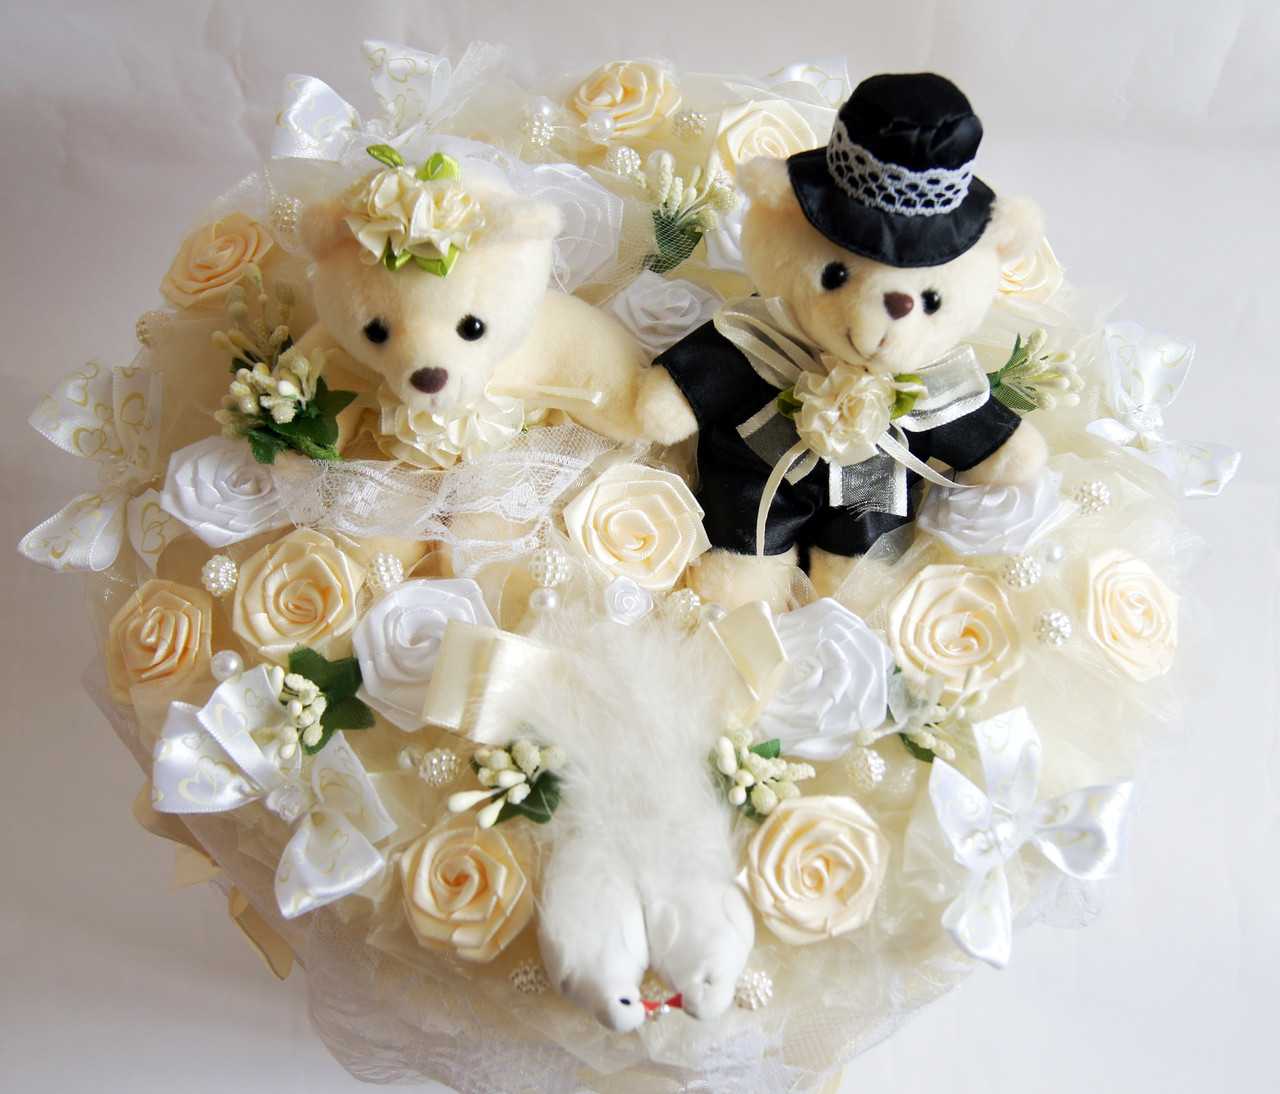 ᐉ нужно ли жениху дарить цветы невесте. обязательно ли дарить на свадьбу цветы. какие дарят цветы фото - 41svadba.ru